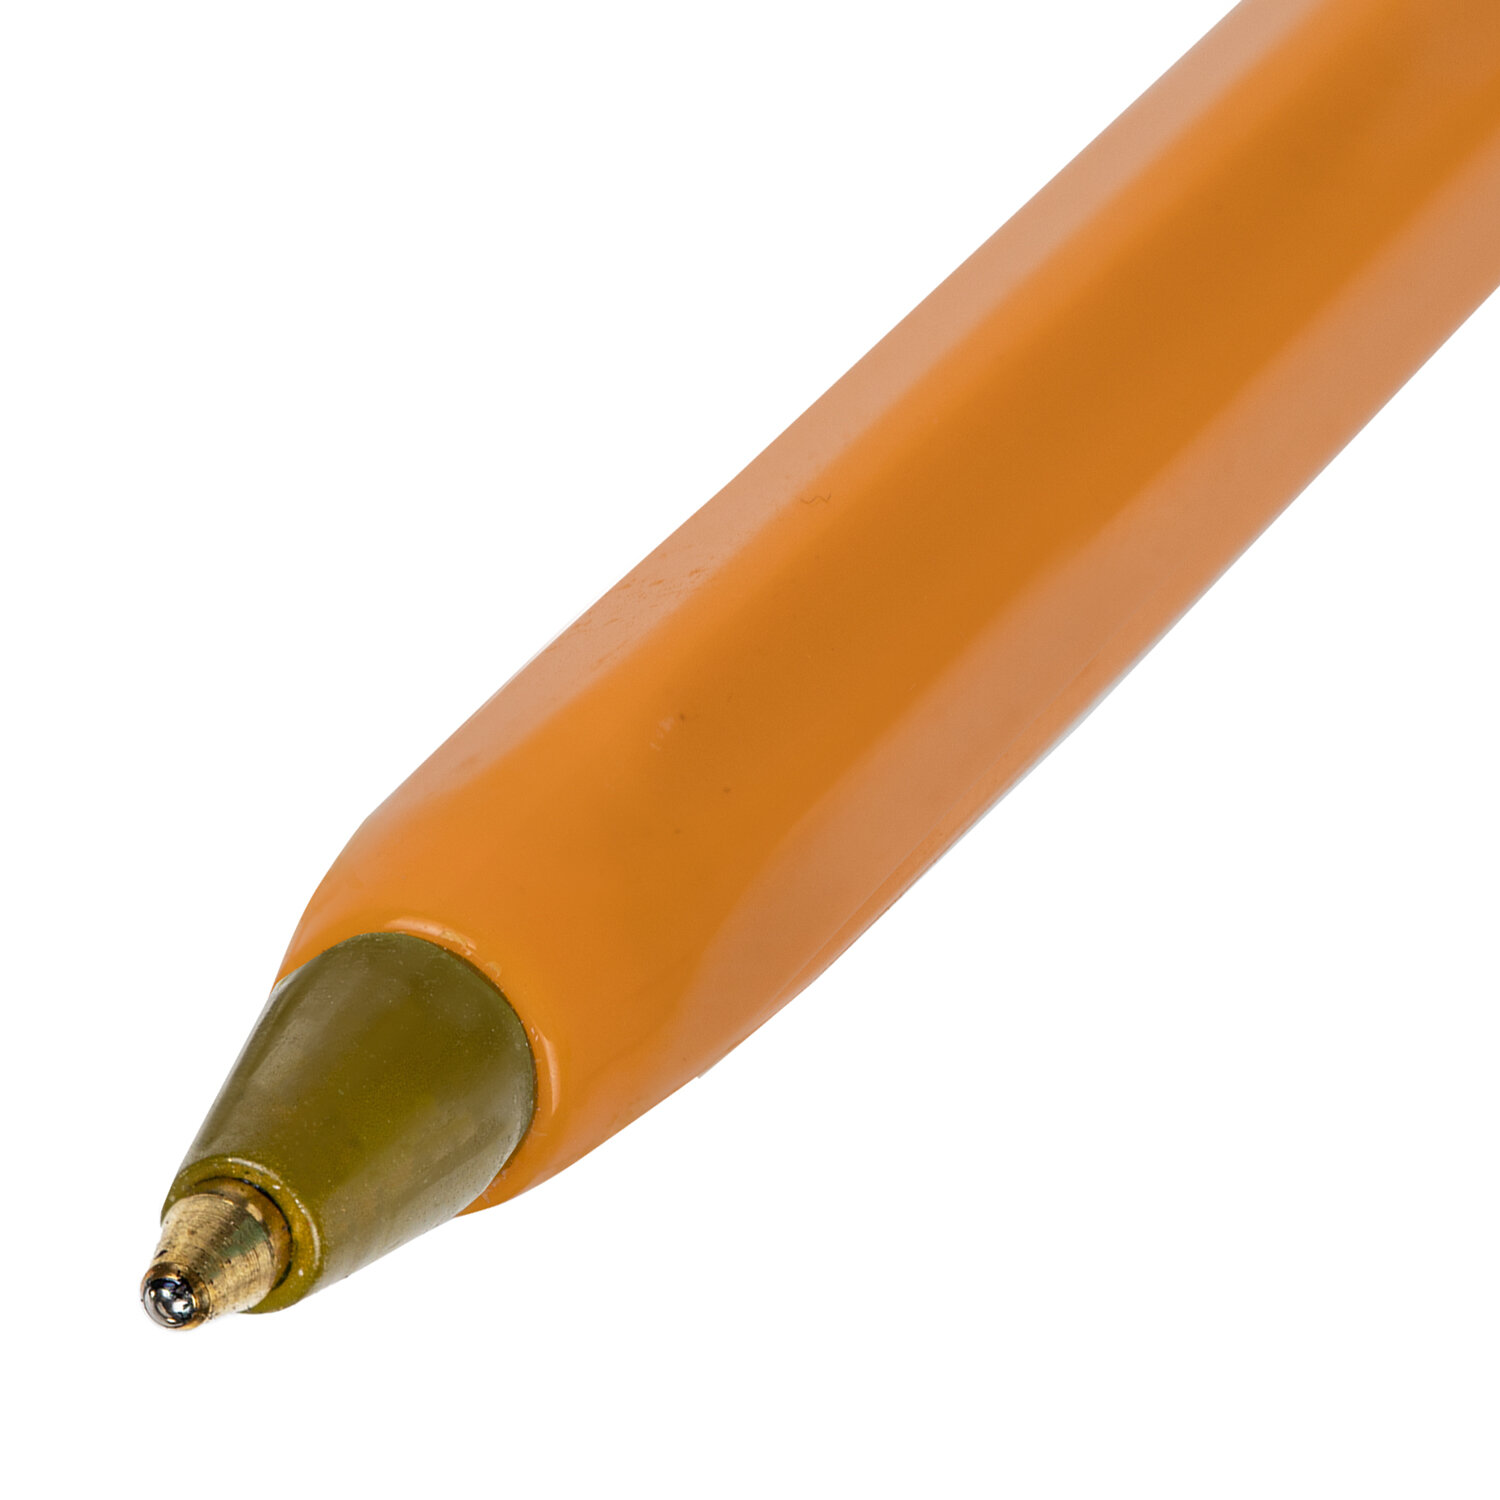 Ручка шариковая STAFF «Basic Orange BP-01», письмо 750 метров, СИНЯЯ, длина корпуса 14 см, узел 1 мм